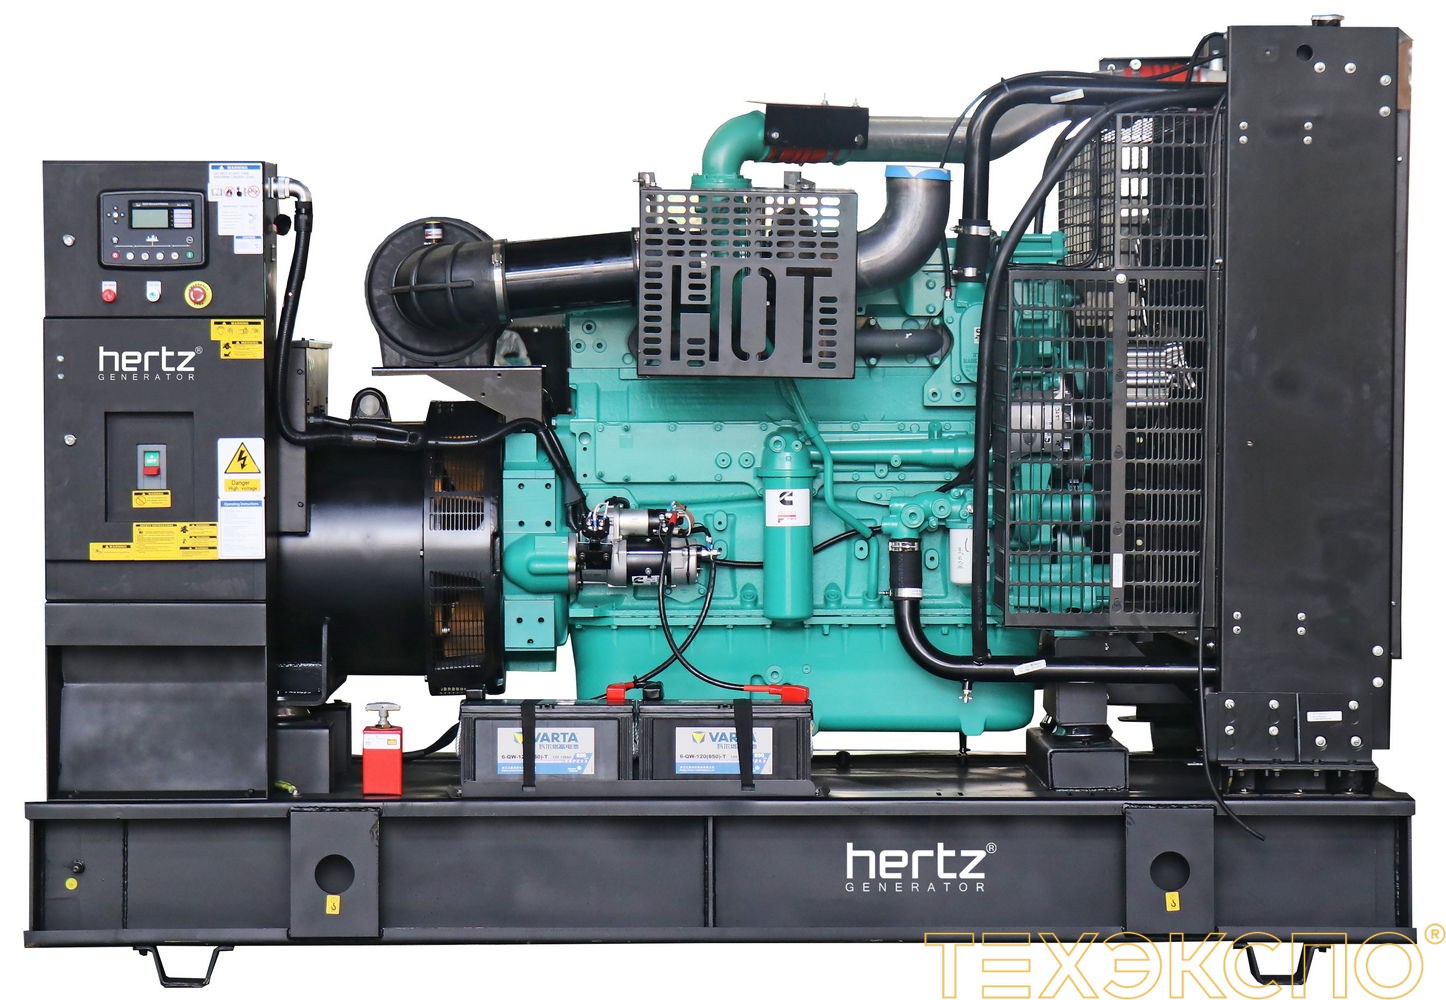 HERTZ HG880 CL - ДЭС 640 кВт в Санкт-Петербурге | Дизельная электростанция в Техэкспо